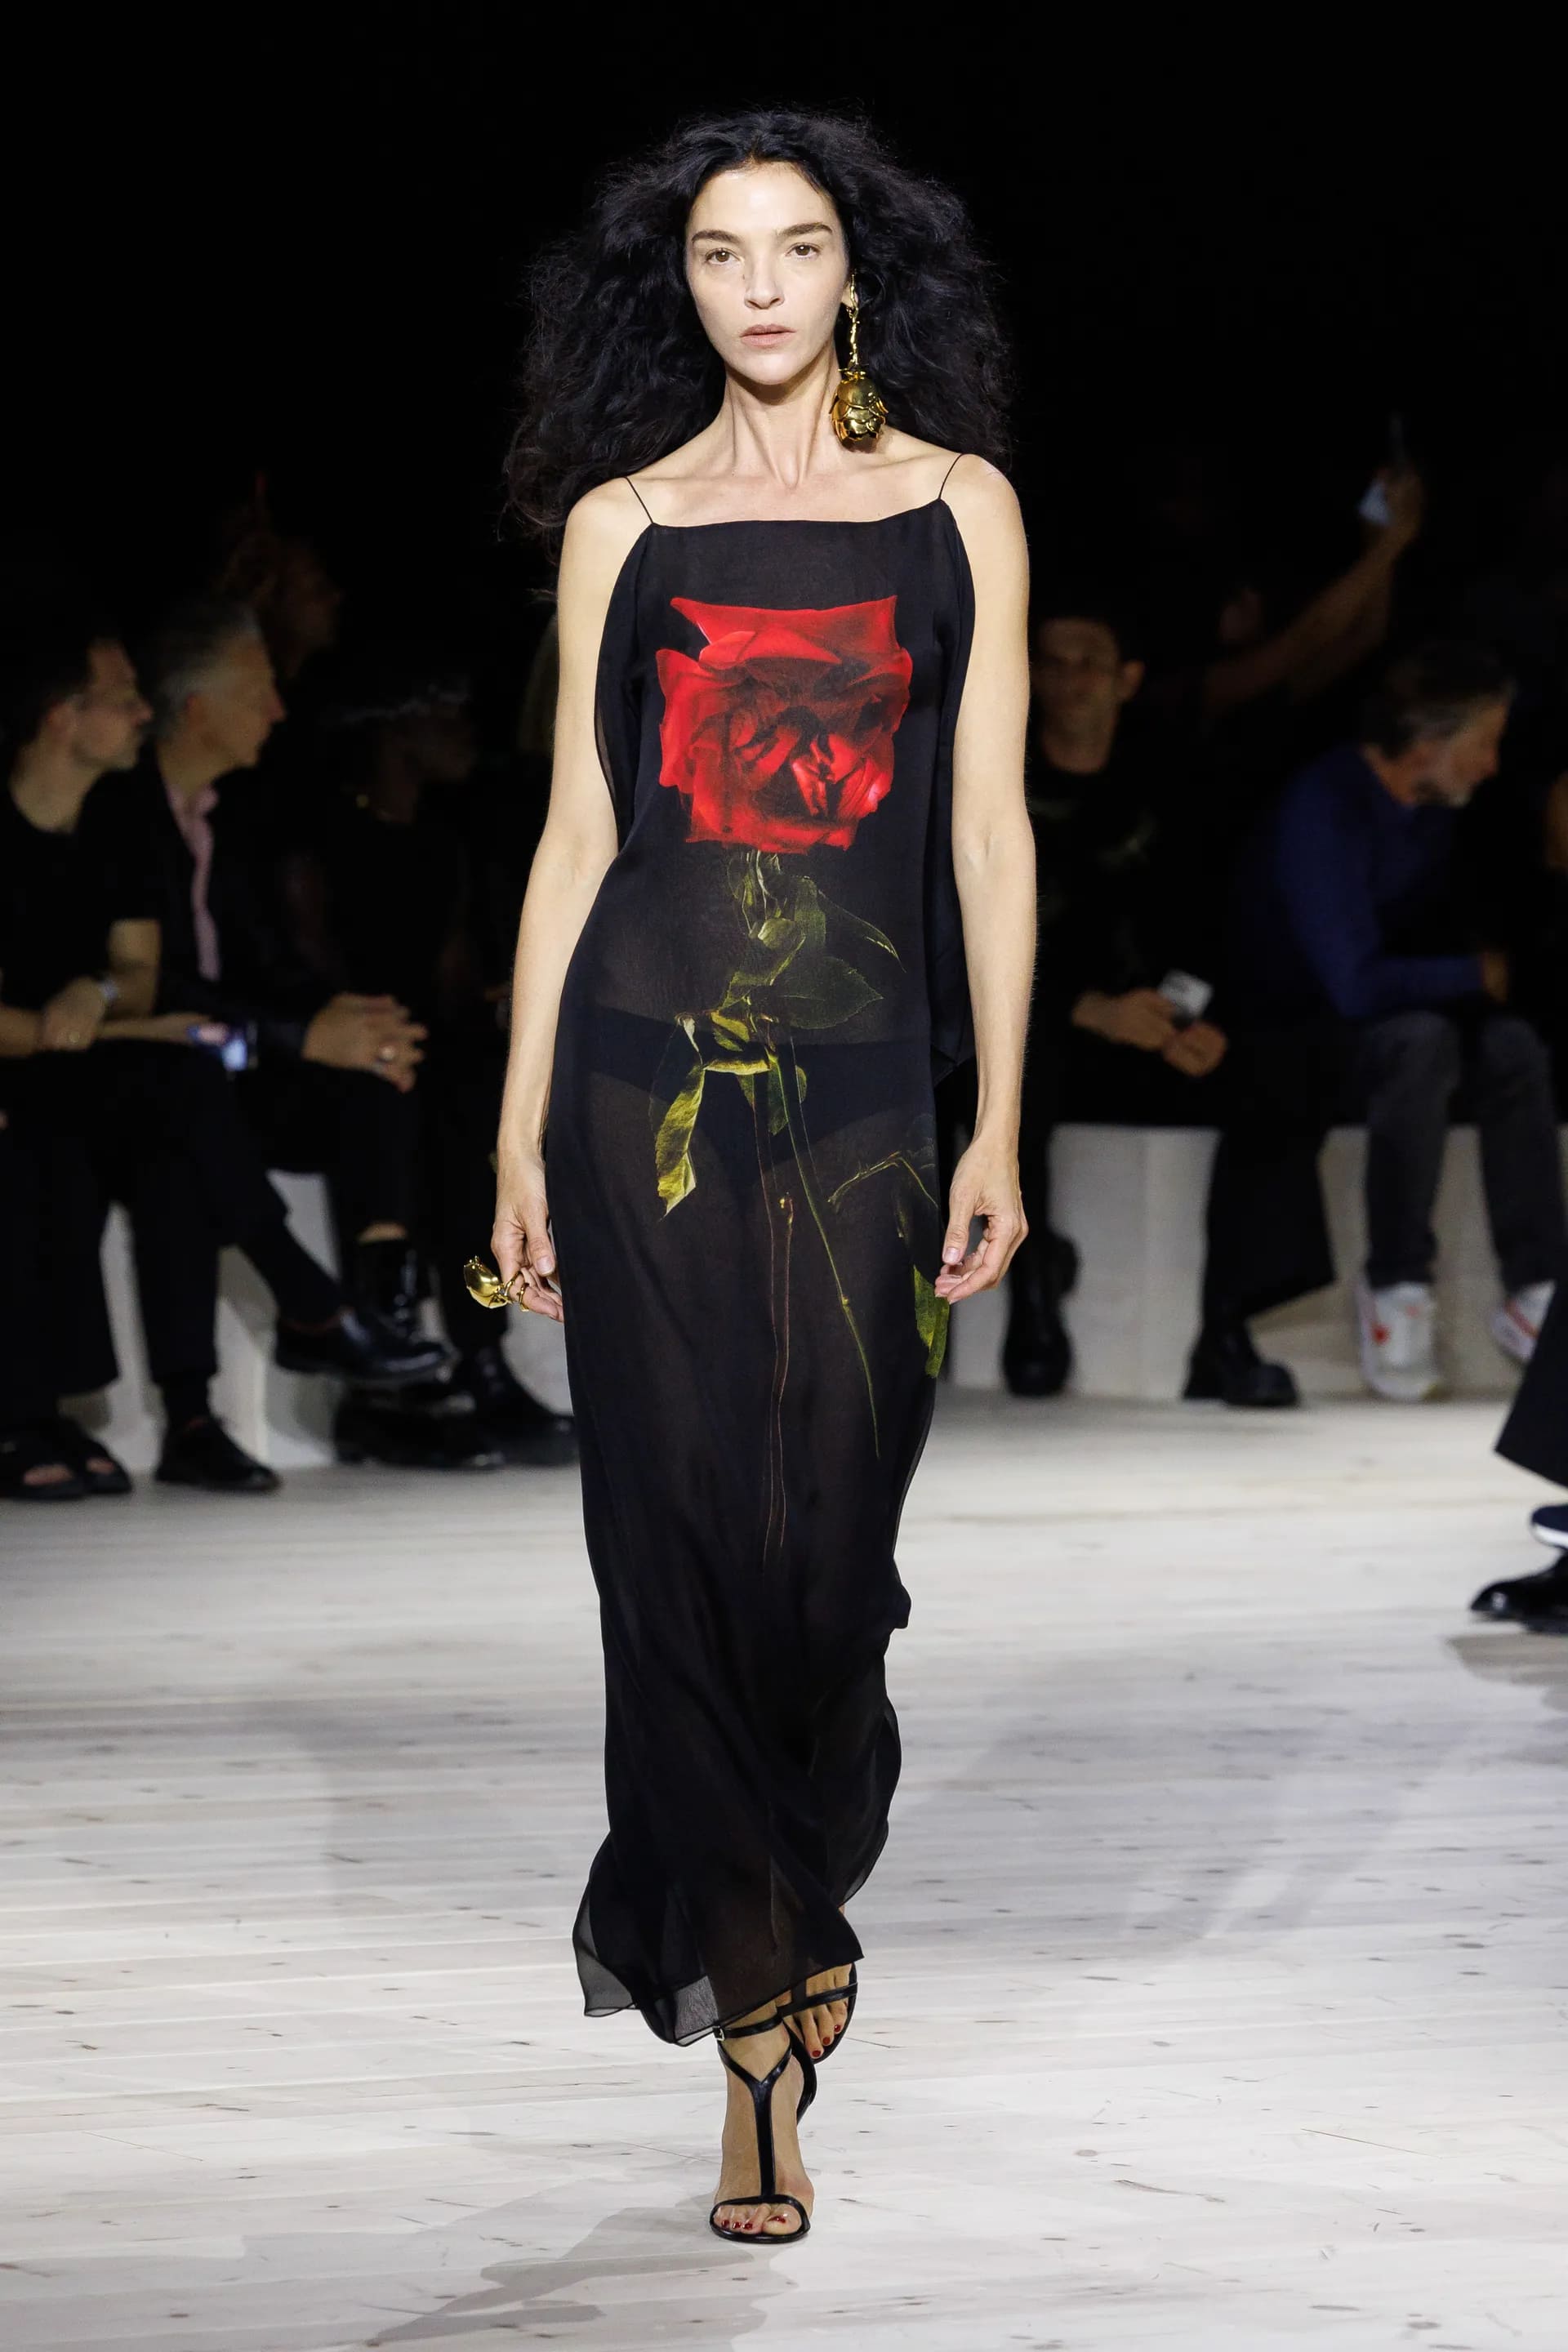  Розы на платьях, седые Хелен Миррен и Энди МакДауэлл на подиуме и прощальная коллекция Сары Бартон для Alexander McQueen: подробности Paris Fashion Week - фото 20